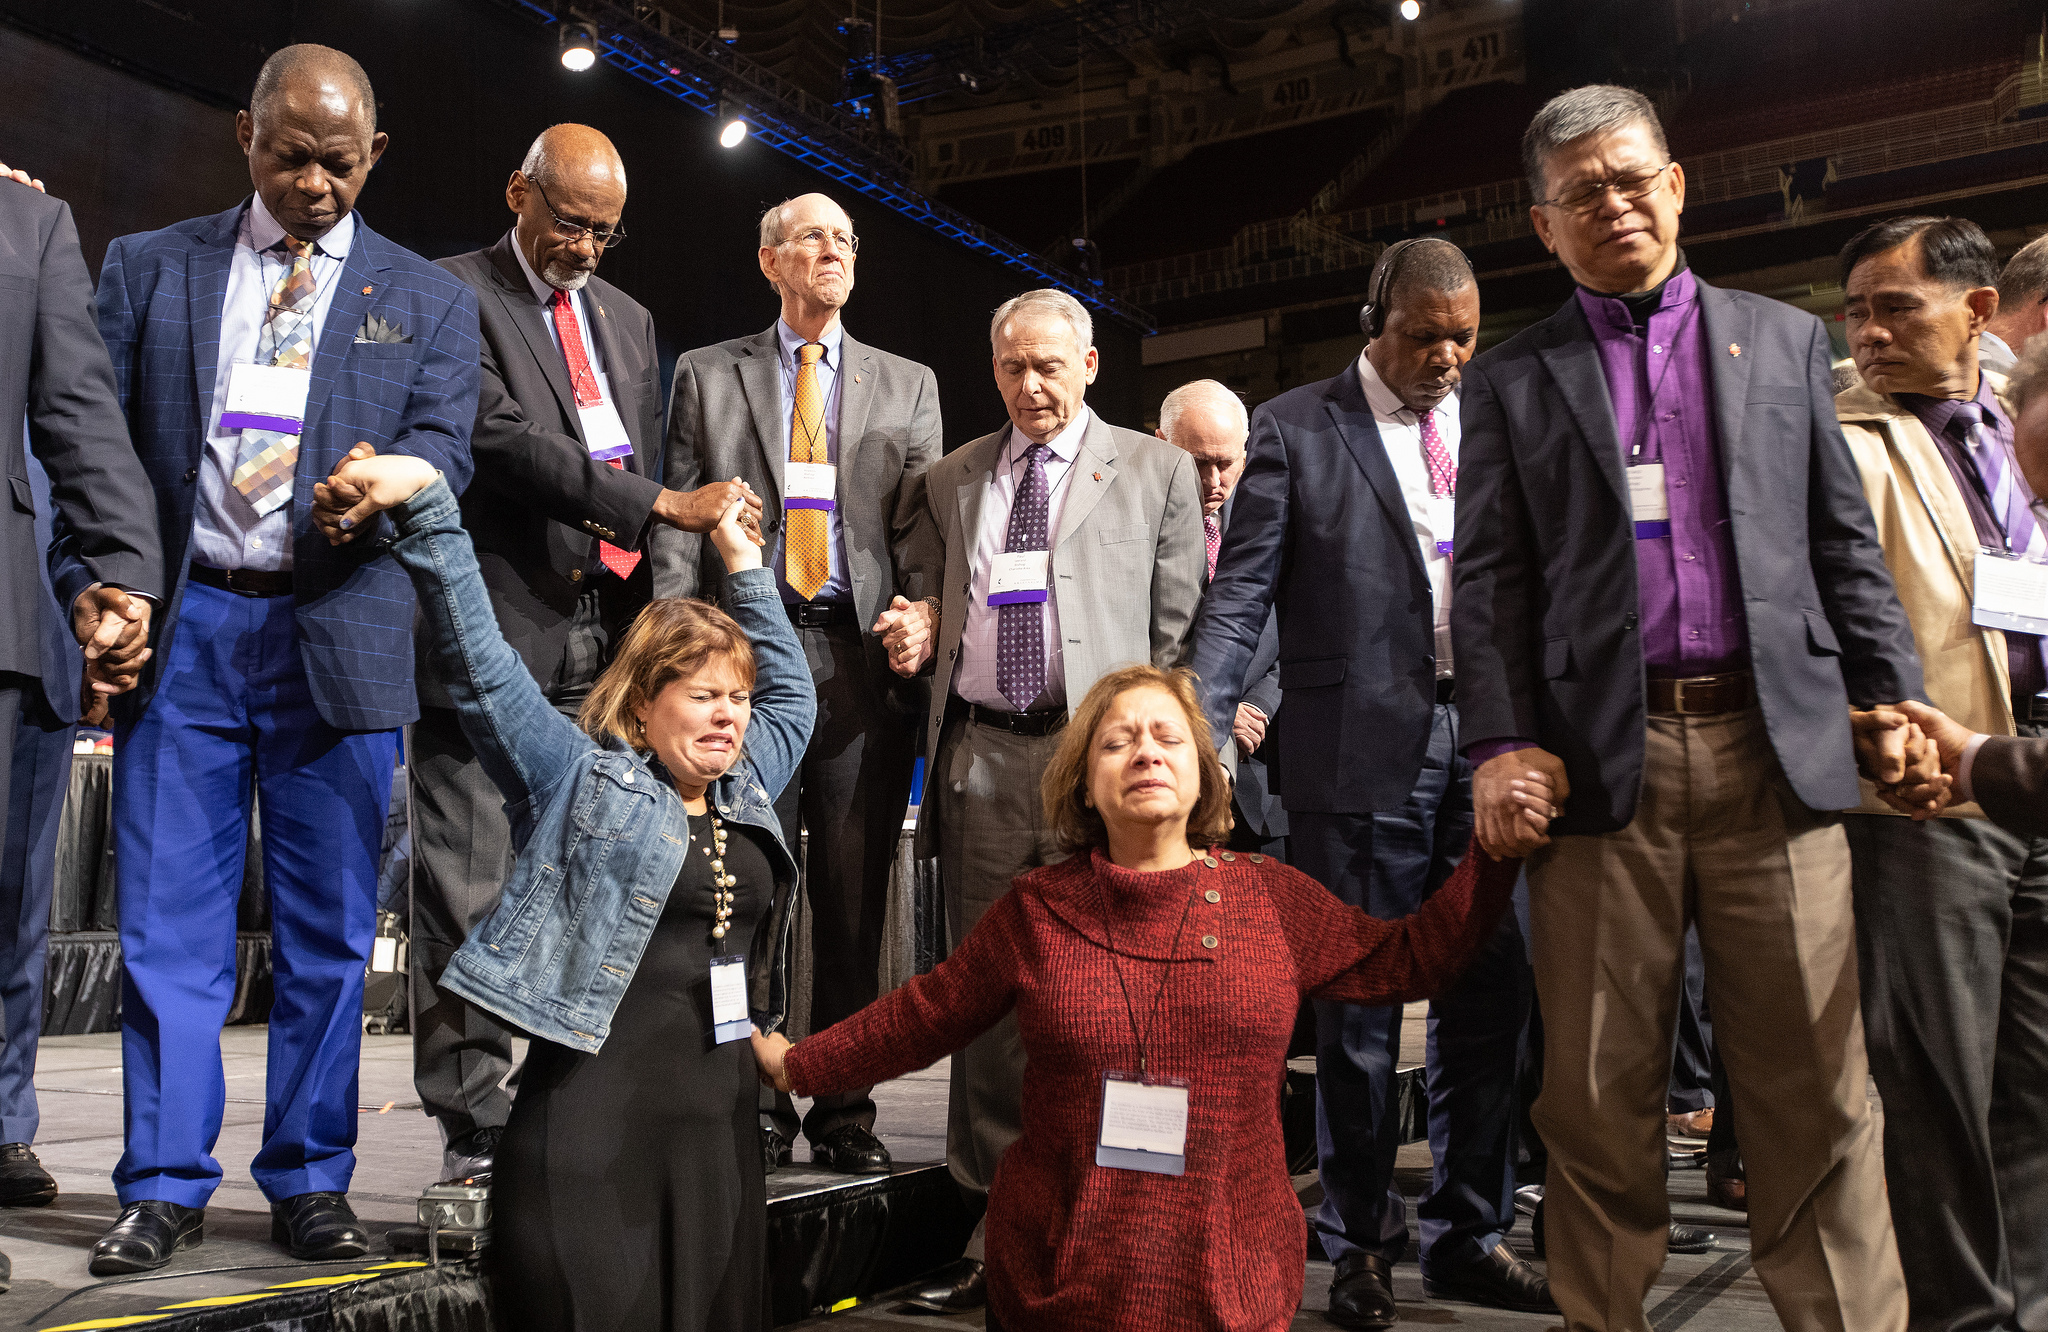 Les délégués de Floride, Rachael Sumner (à gauche) et la révérende Jacqueline Leveron (à droite) de la Conférence de Floride se tiennent les mains pour prier avec les évêques et d'autres délégués présents sur le podium avant un vote important sur la politique de l'Eglise en matière d'homosexualité à la Conférence Générale 2019 de l’Église Méthodiste Unie à St. Louis. Photo de Mike DuBose, UMNS.